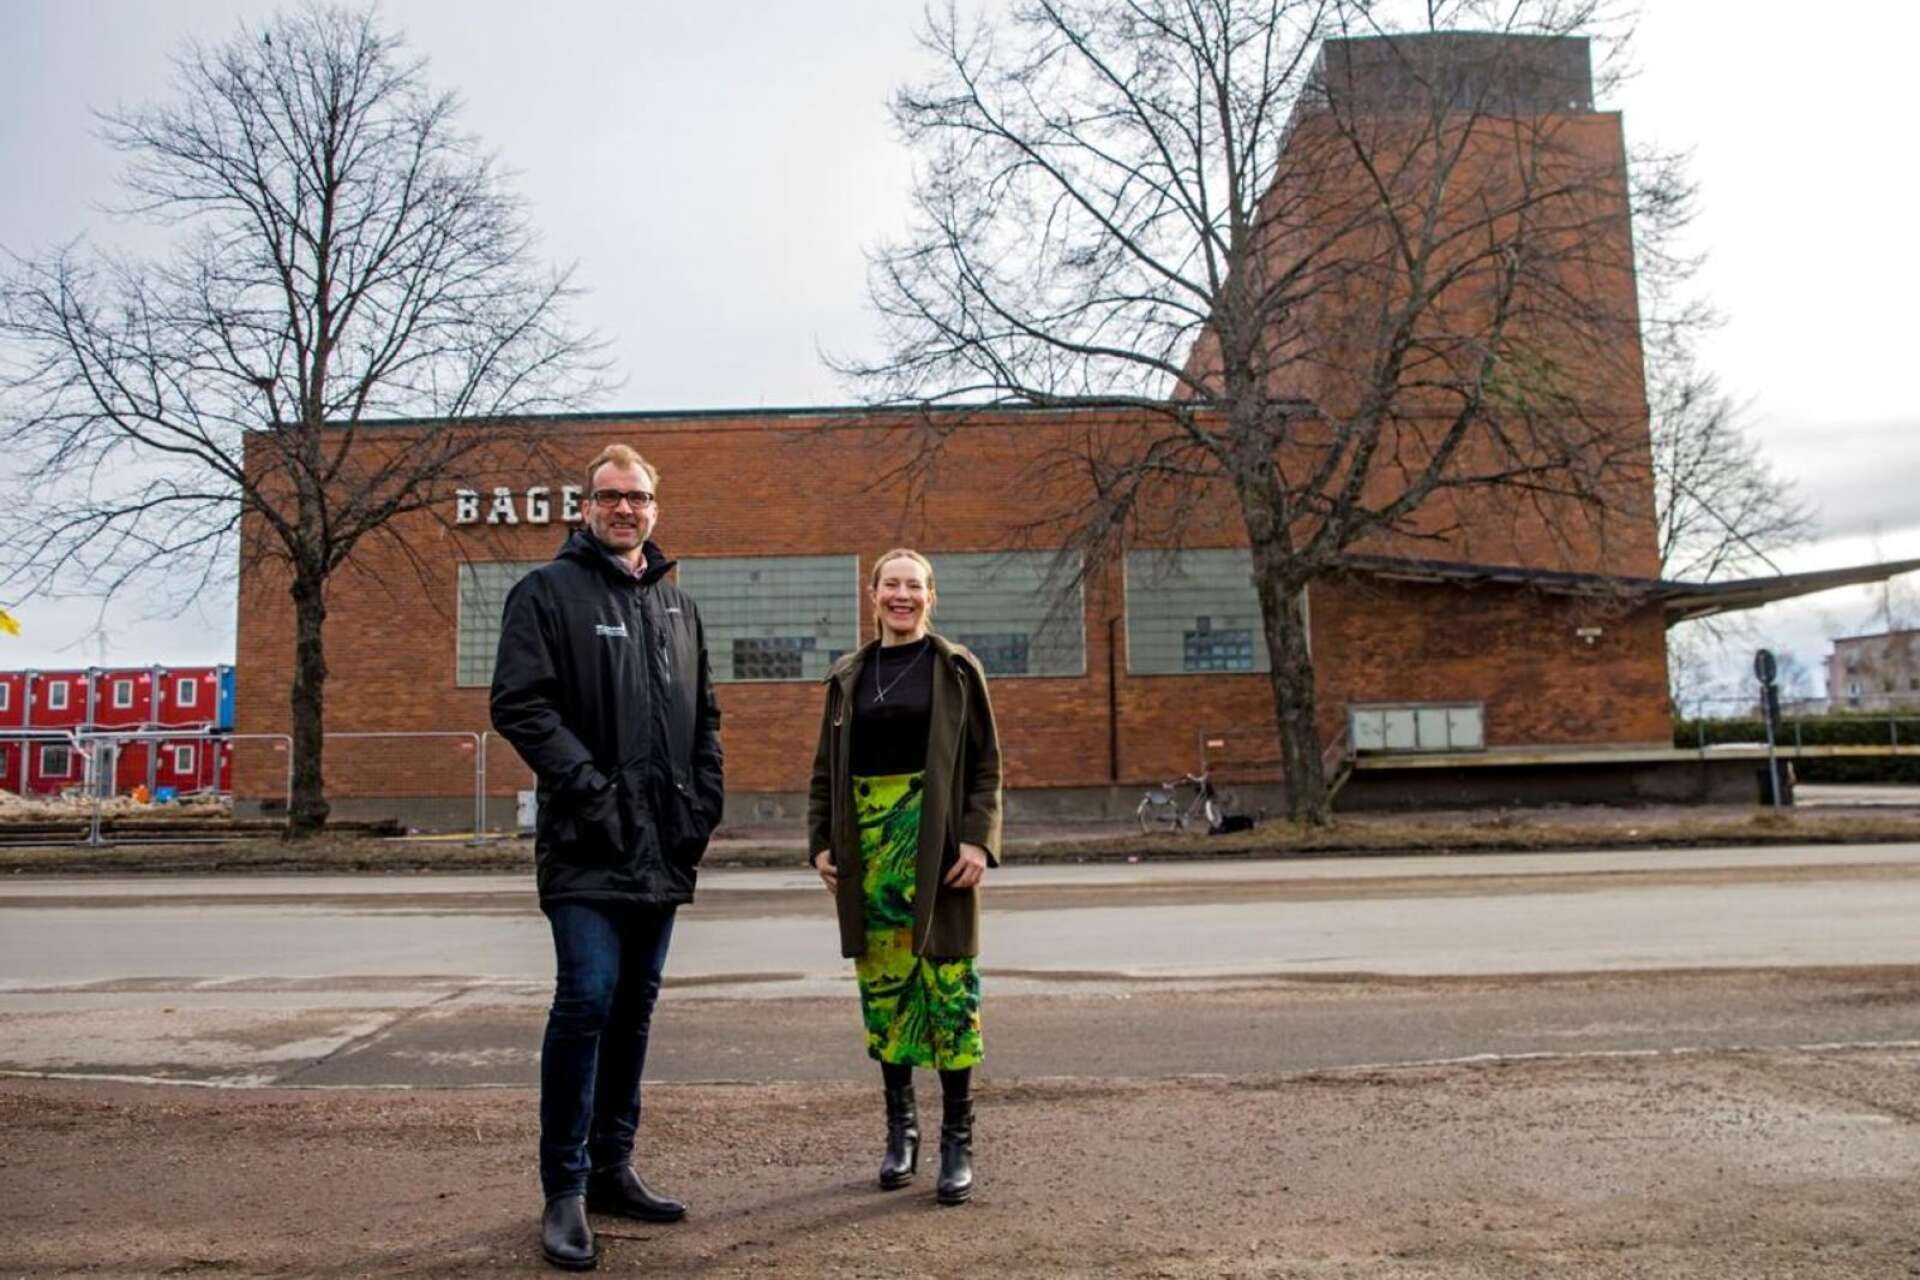 Löfberg fastigheter och Wermlands invest har köpt det gamla bageriet av Coop Värmland. Här ses bolagets vd:ar Tomas Rhöse och Josefin Knarrström Bergh som berättar att lokalerna ska förvandlas till en kulturhus.